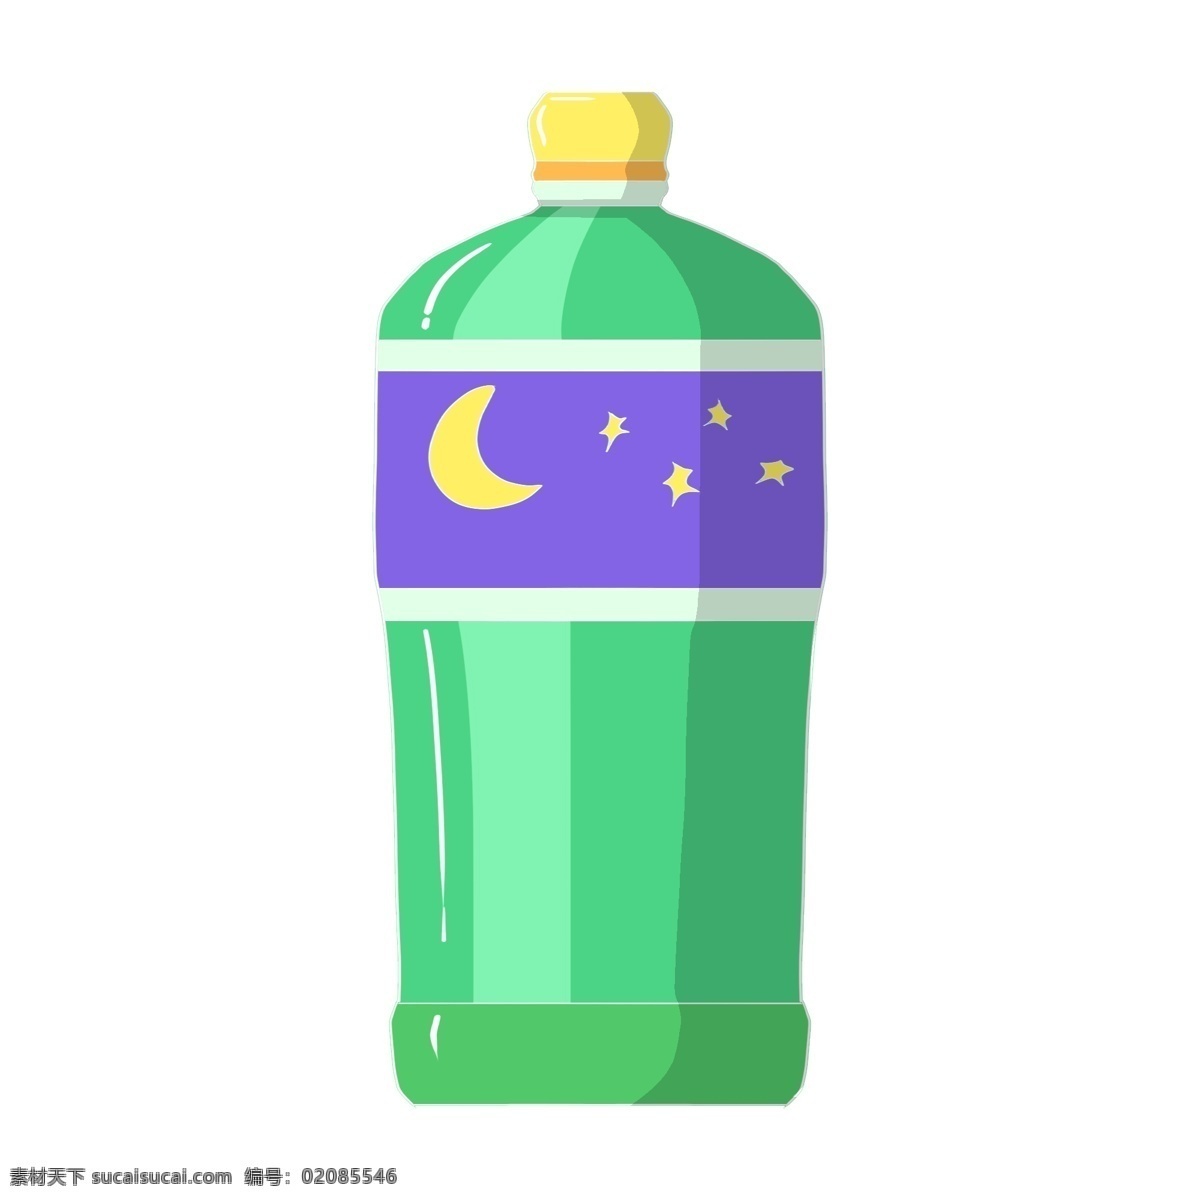 手绘 雪碧 瓶子 插画 绿色的瓶子 弯弯的月亮 闪闪的星星 卡通插画 手绘瓶子插画 雪碧的瓶子